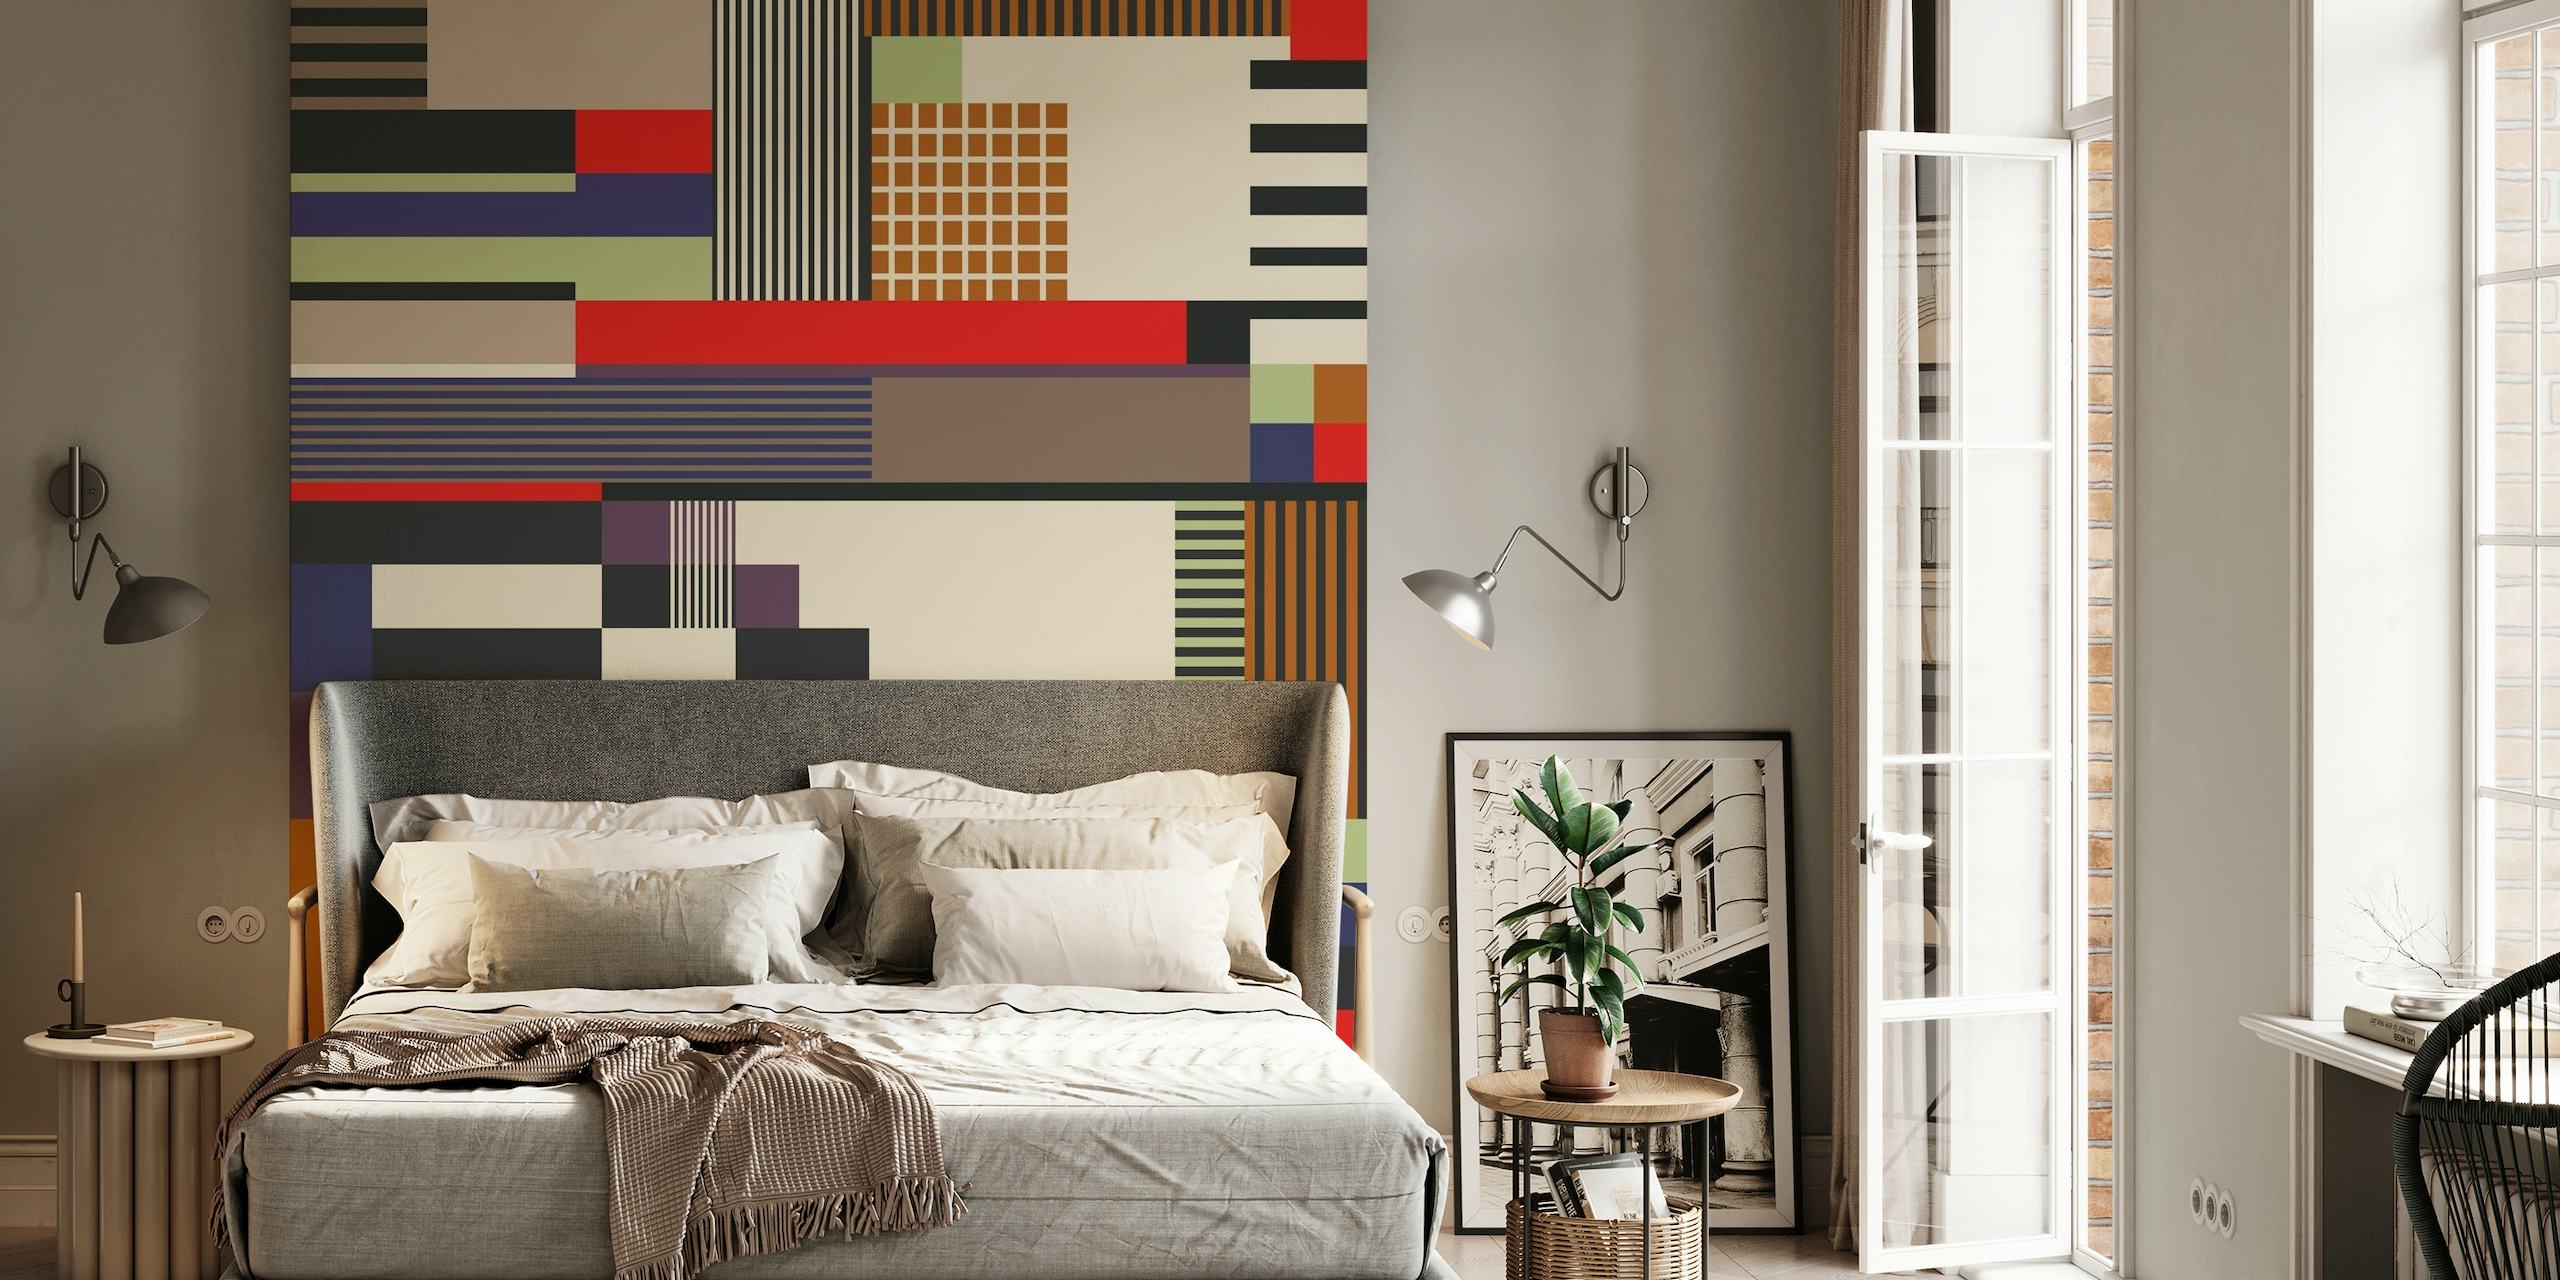 Abstrakti geometrinen kuviollinen seinämaalaus, jossa on sekoitus suorakulmioita ja viivoja eri väreissä